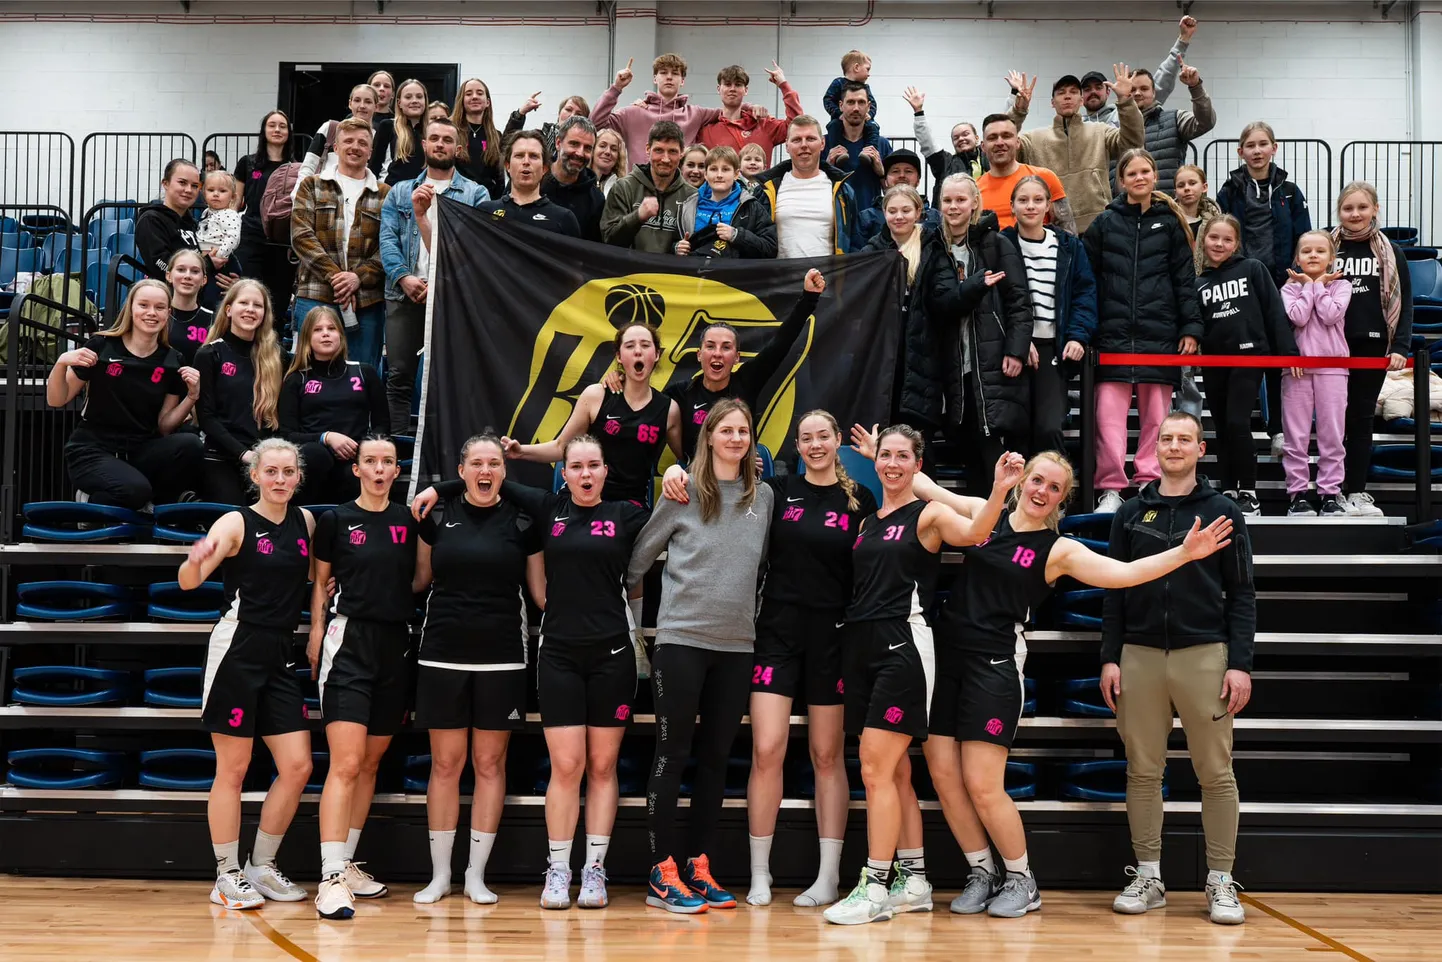 Paide korvpalliklubi Seitse naiskonda oli Tallinnas toimunud poolfinaalis toetamas arvukalt poolehoidjaid.